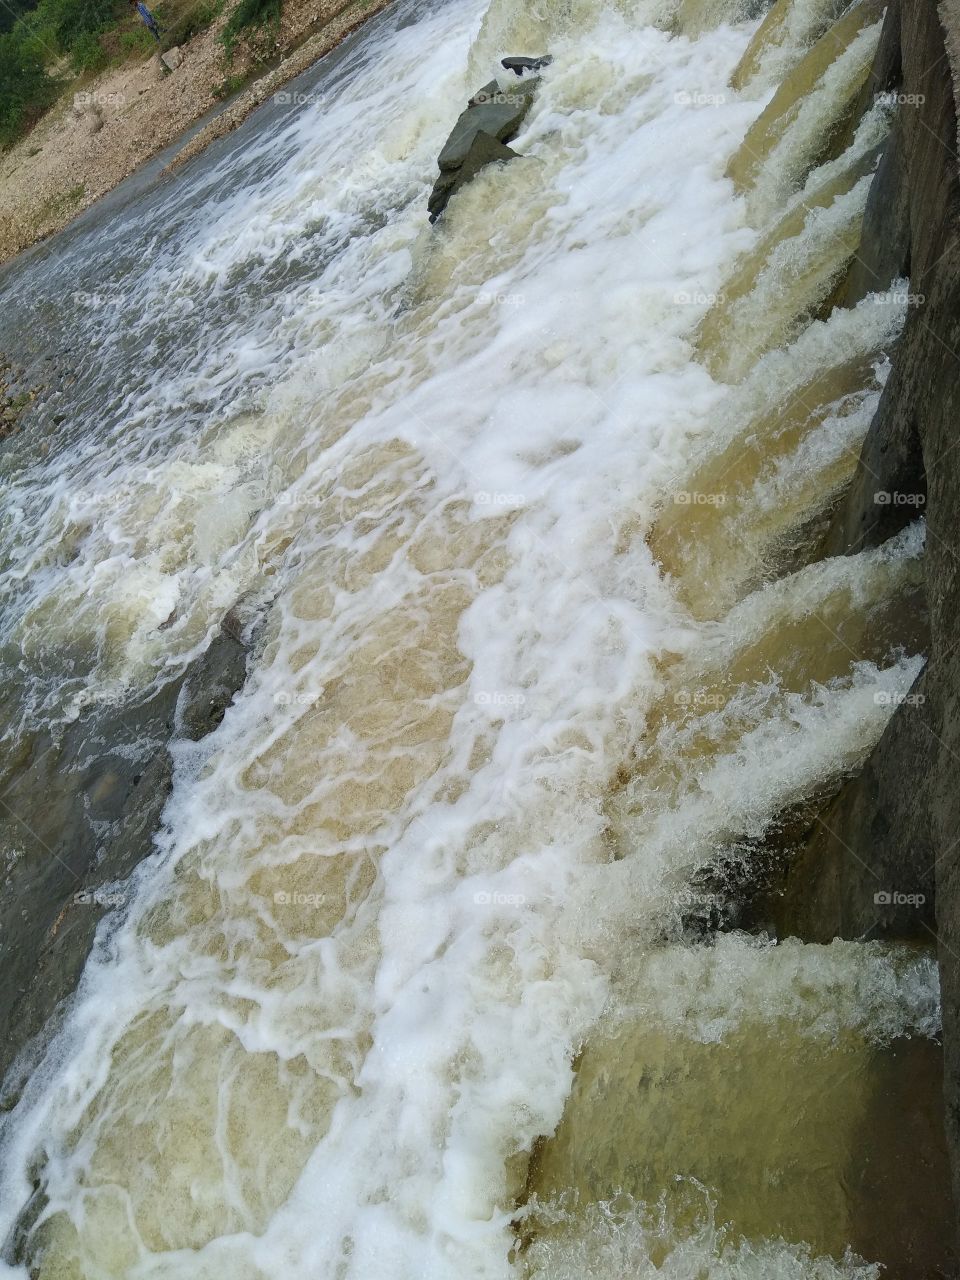 Water fall